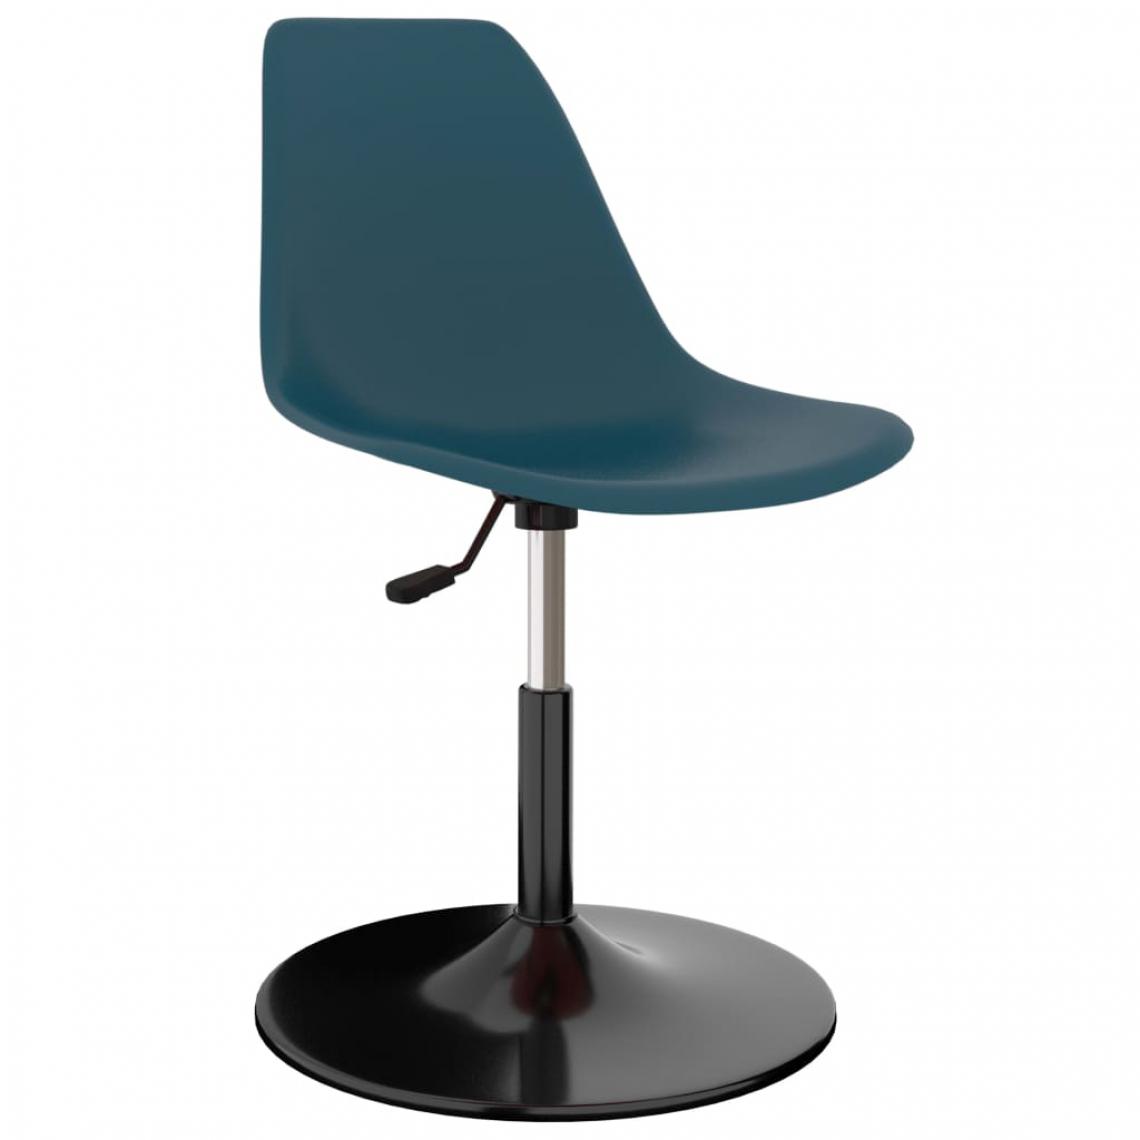 Decoshop26 - Lot de 4 chaises de salle à manger cuisine hauteur réglable pivotante polypropylène turquoise CDS021901 - Chaises